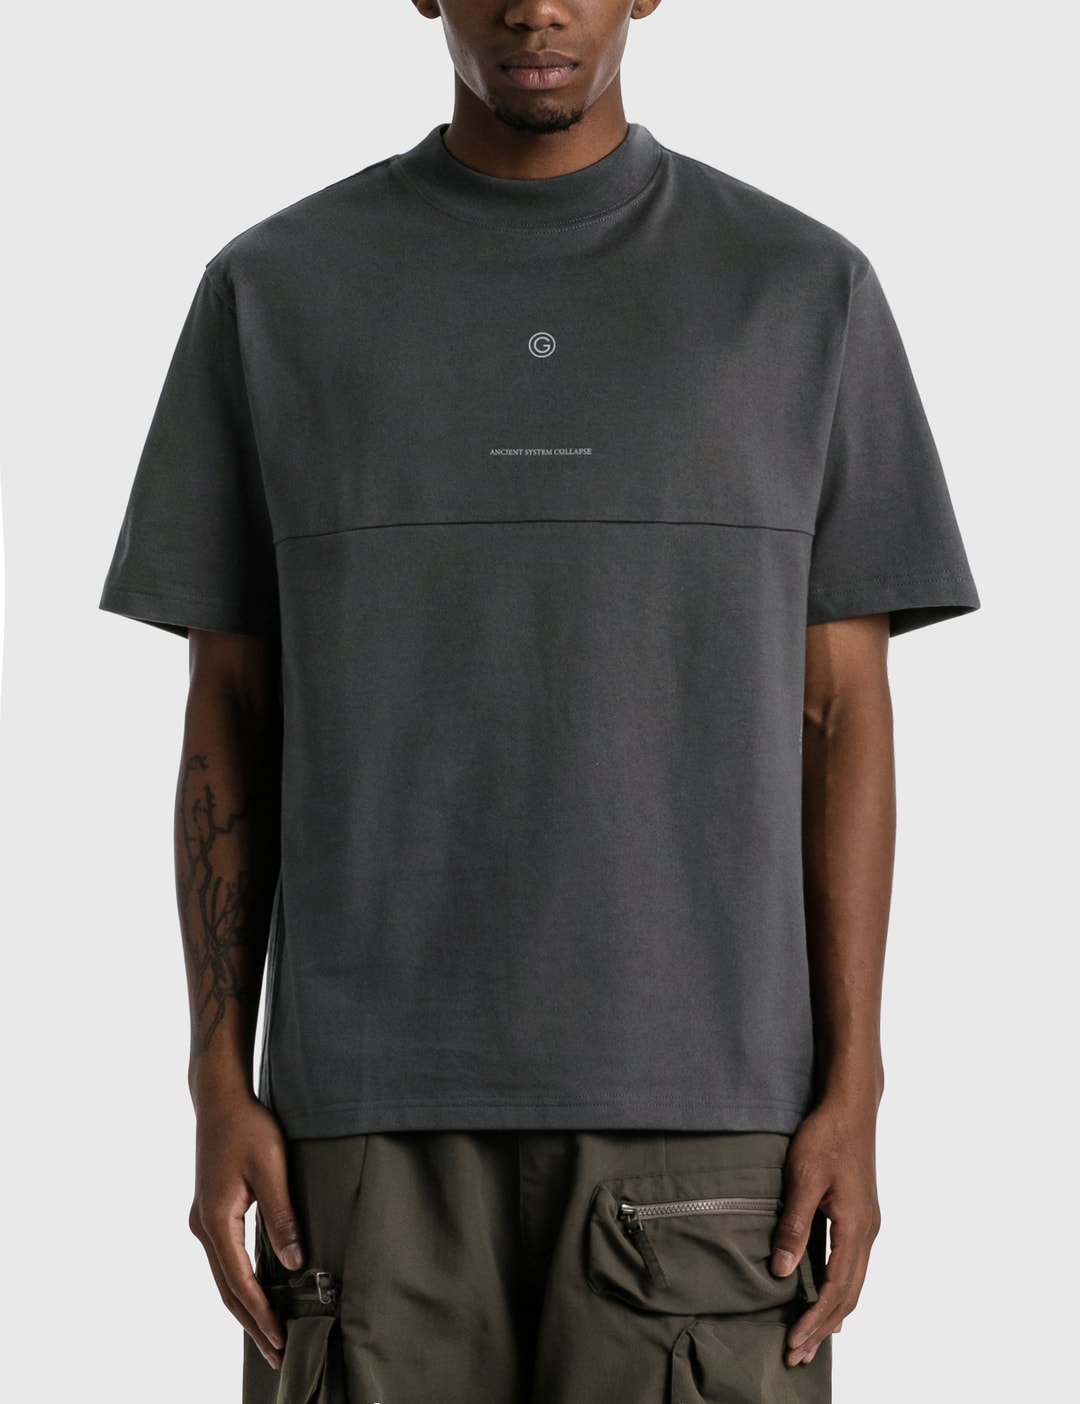 GOOPiMADE - “ASC-01” Scismatique T-shirt | HBX - Globally Curated ...